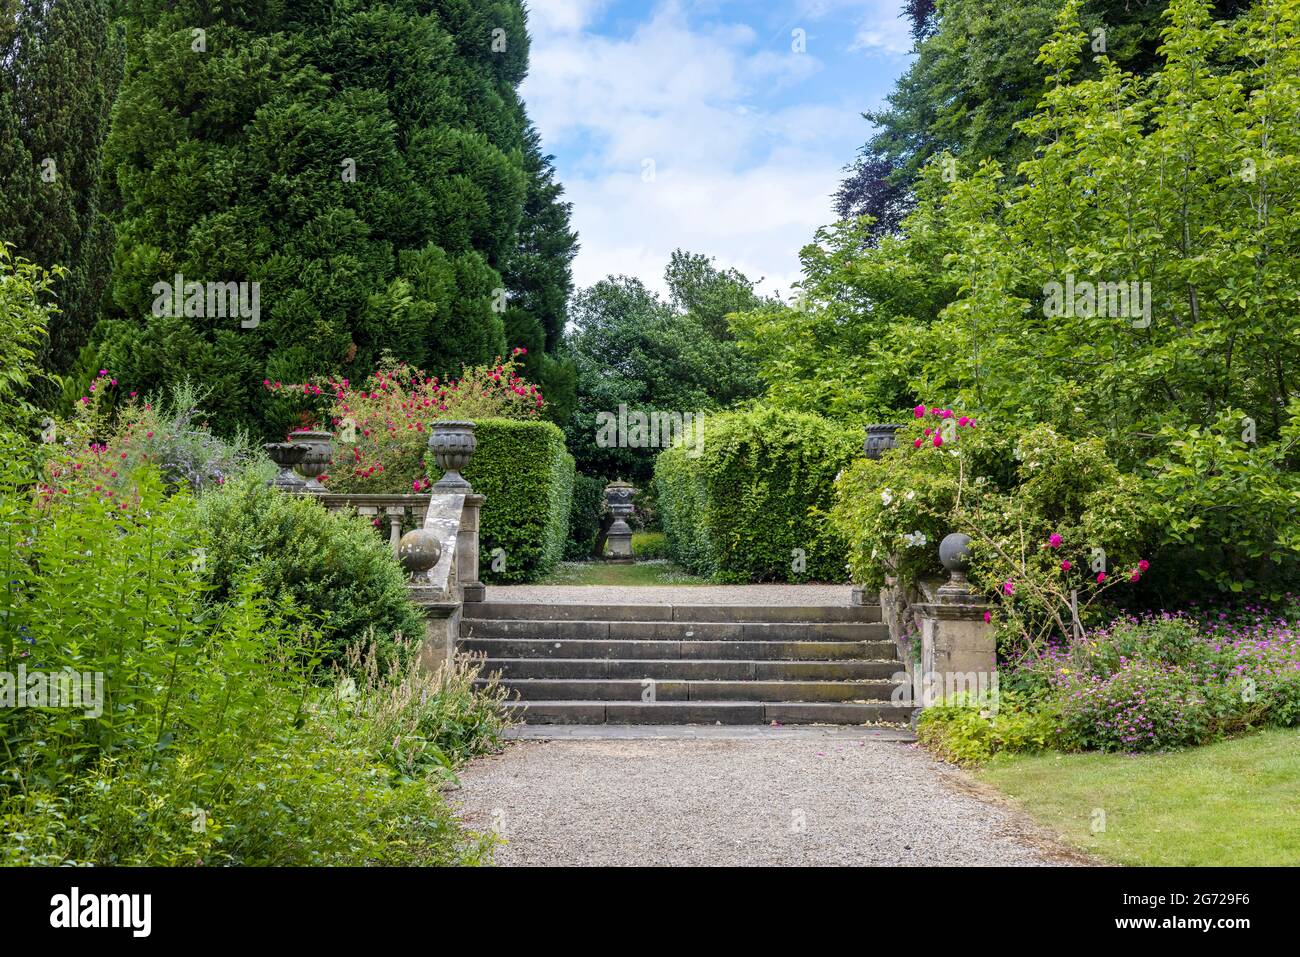 Vieux marches de jardin en pierre et balustrade avec jardinières décoratives dans un parc. Banque D'Images